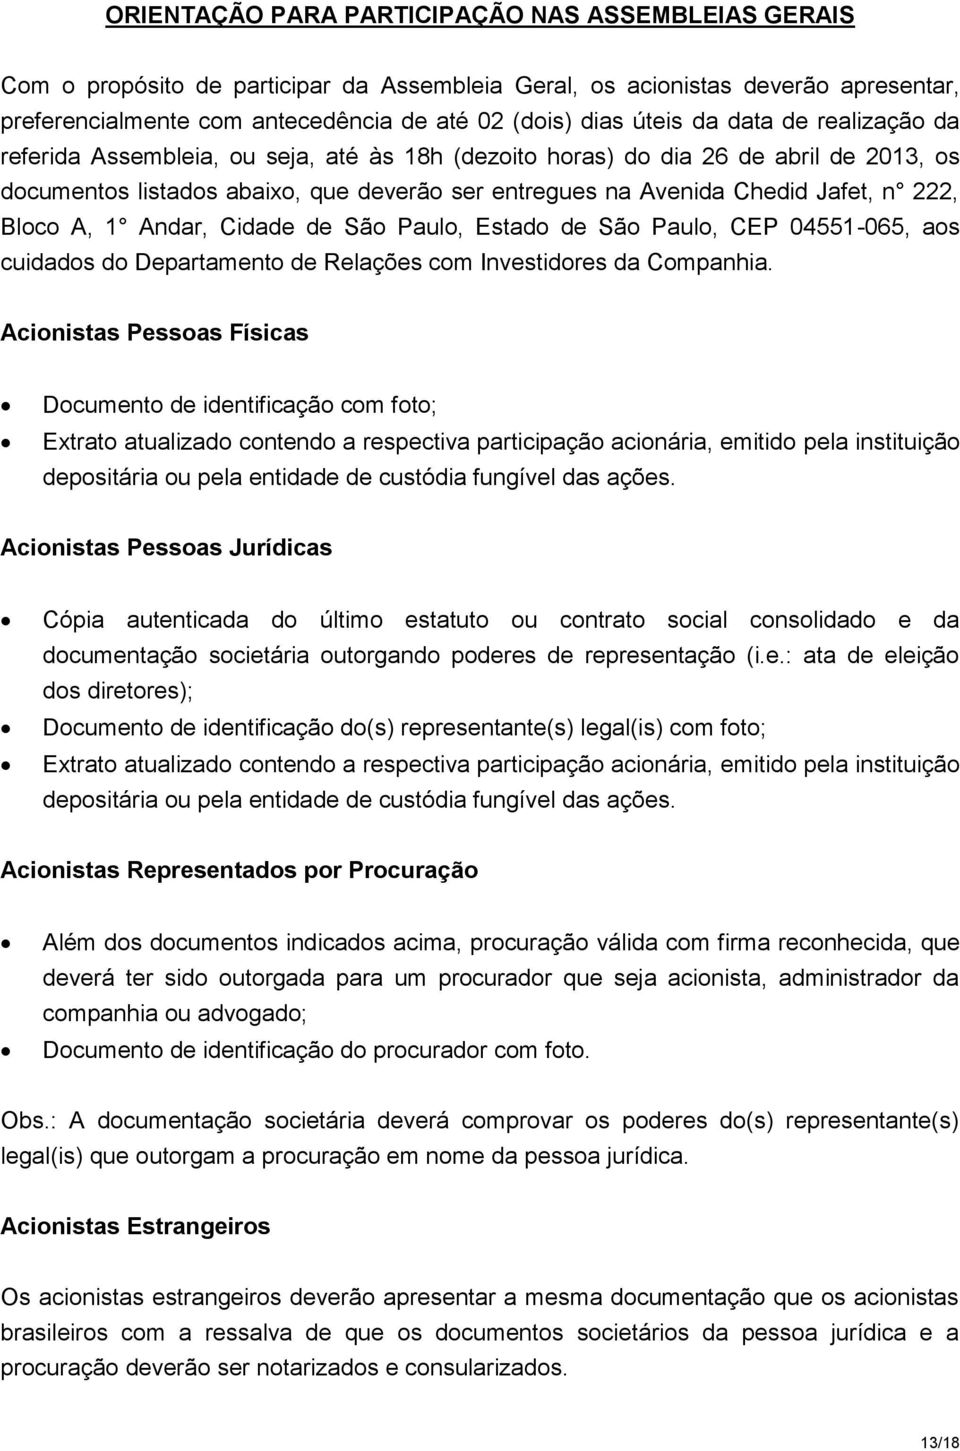 Bloco A, 1 Andar, Cidade de São Paulo, Estado de São Paulo, CEP 04551-065, aos cuidados do Departamento de Relações com Investidores da Companhia.